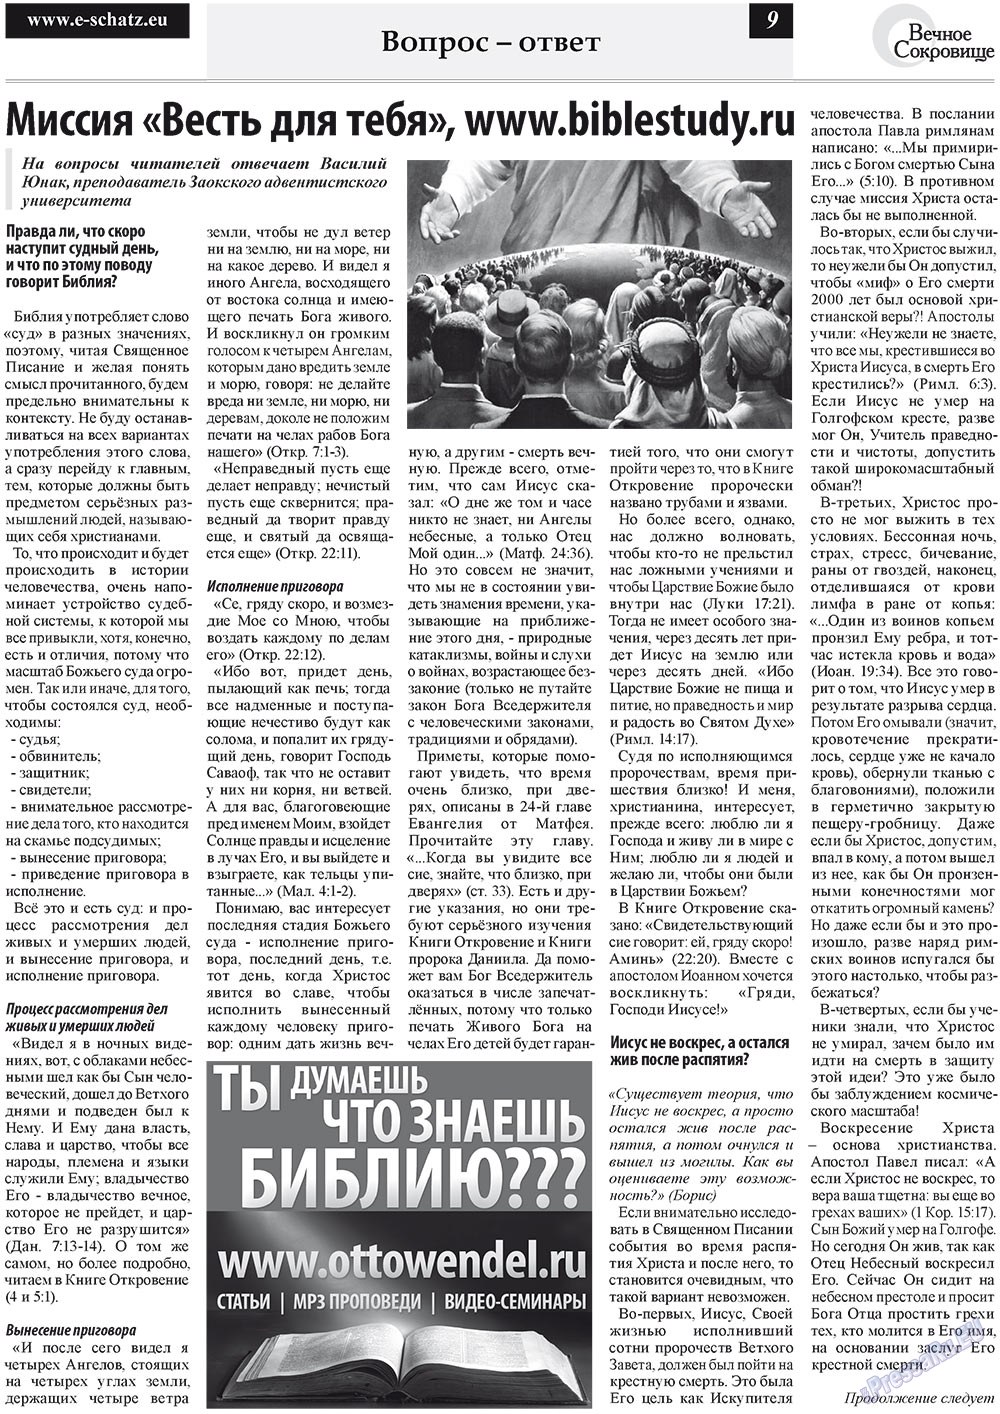 Вечное сокровище, газета. 2011 №4 стр.9